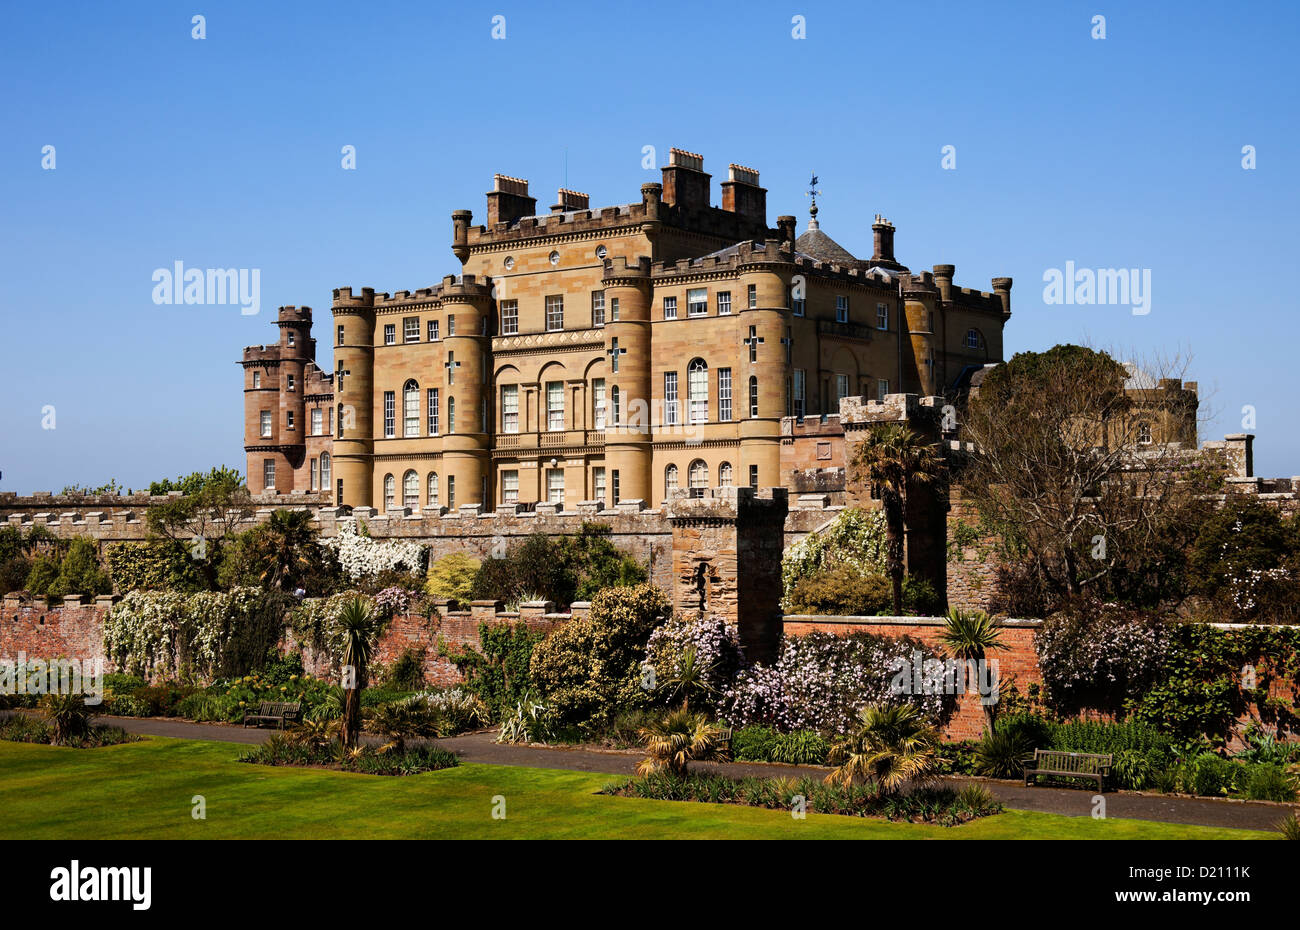 Le Château de Culzean, Ayrshire, Scotland Banque D'Images